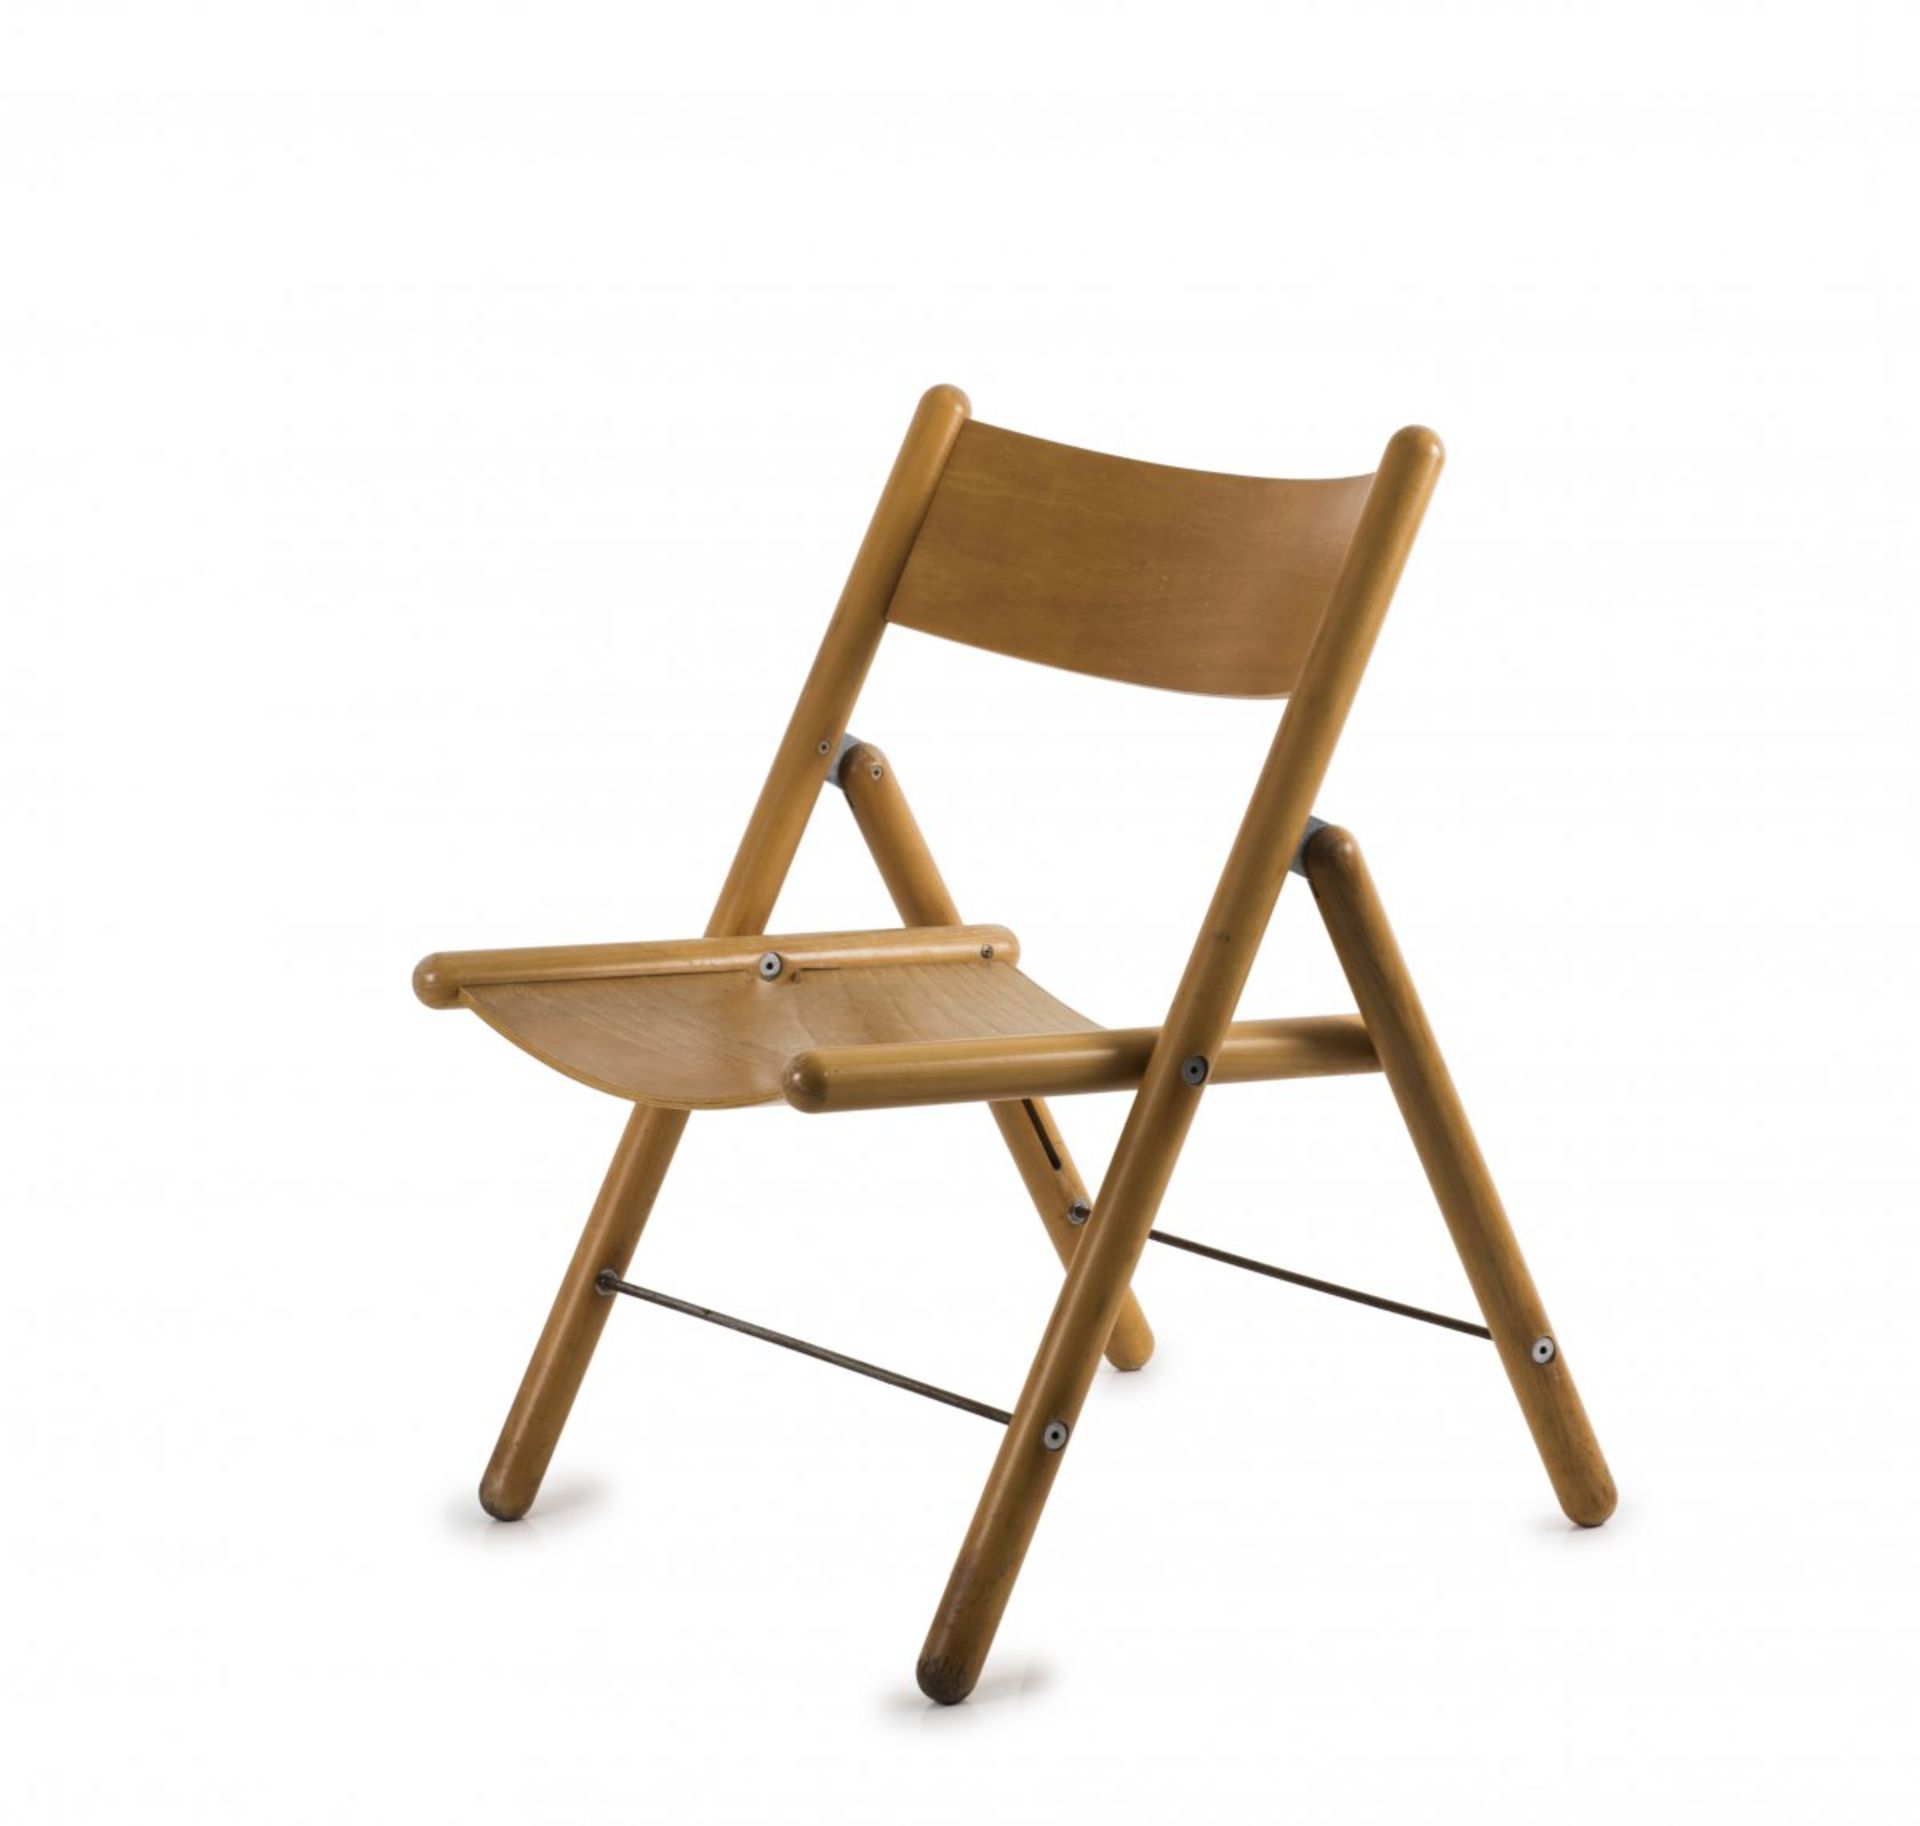 Otl Aicher, 'Rotis-Serie' folding chair, c. 1971/72